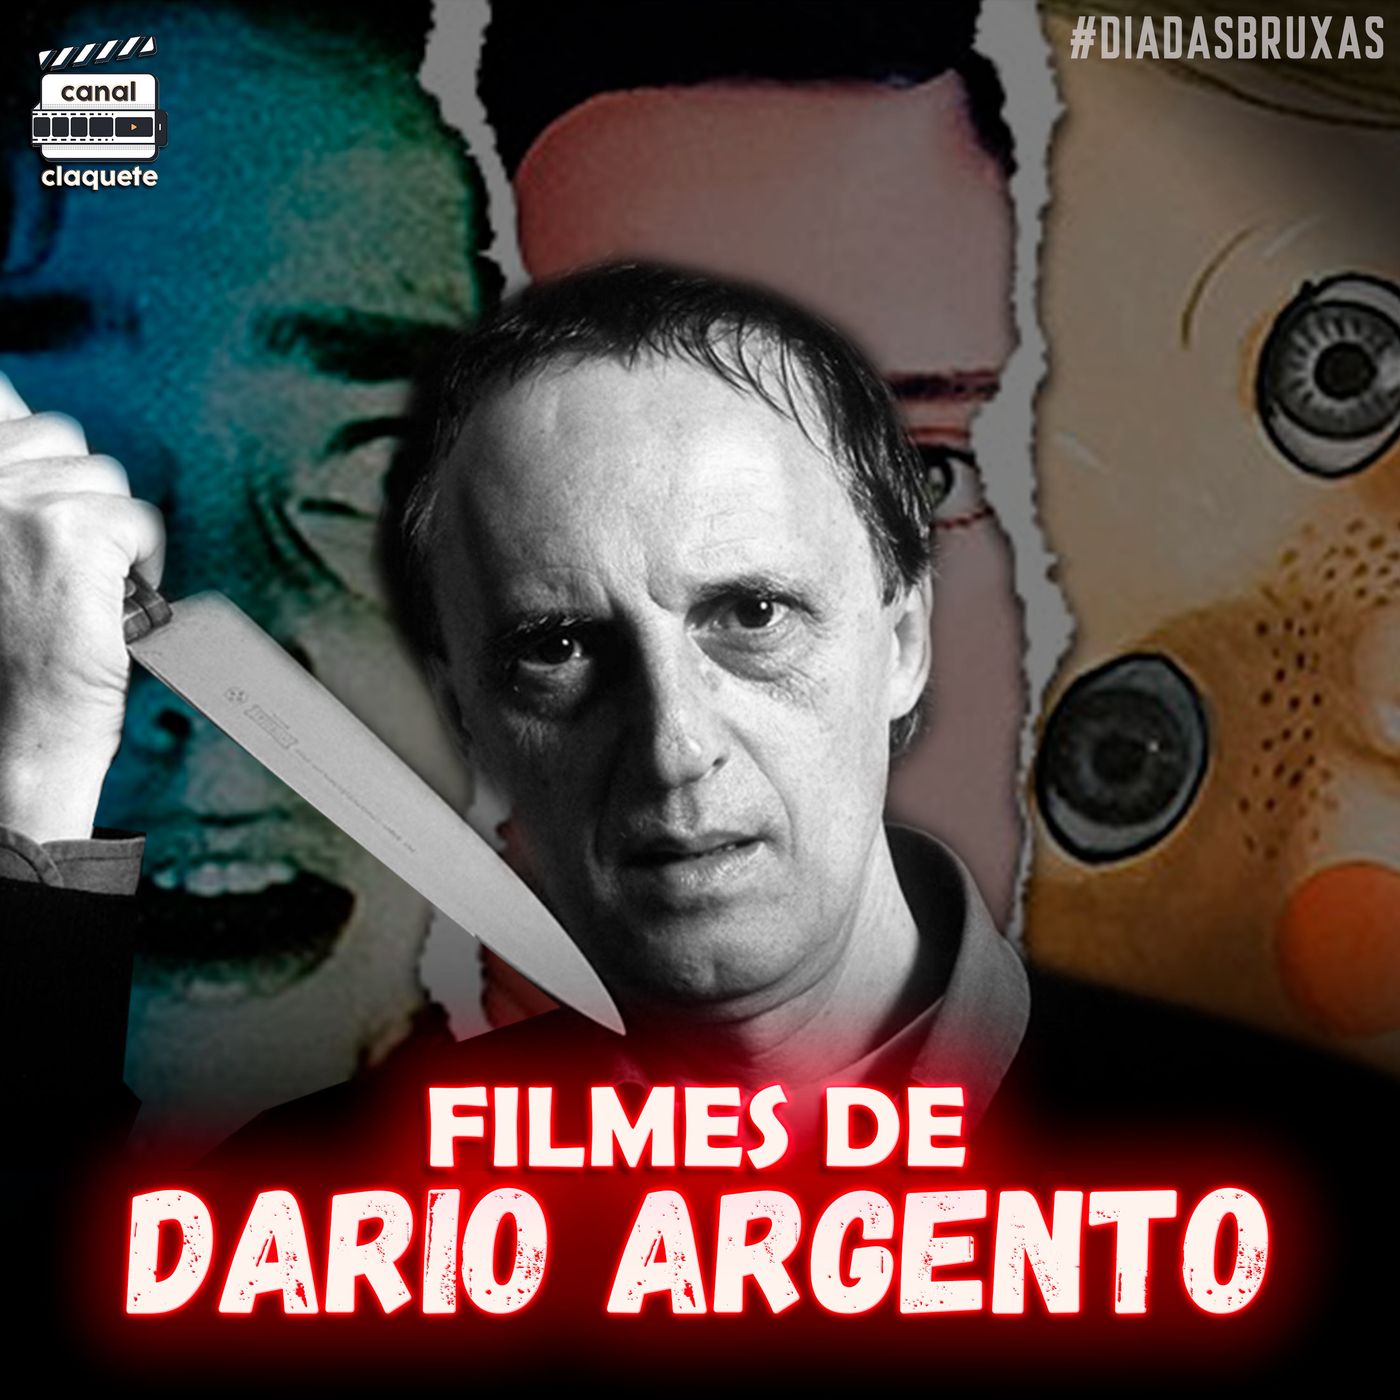 Filmes do Dario Argento | Clacast 106 | #DiaDasBruxas